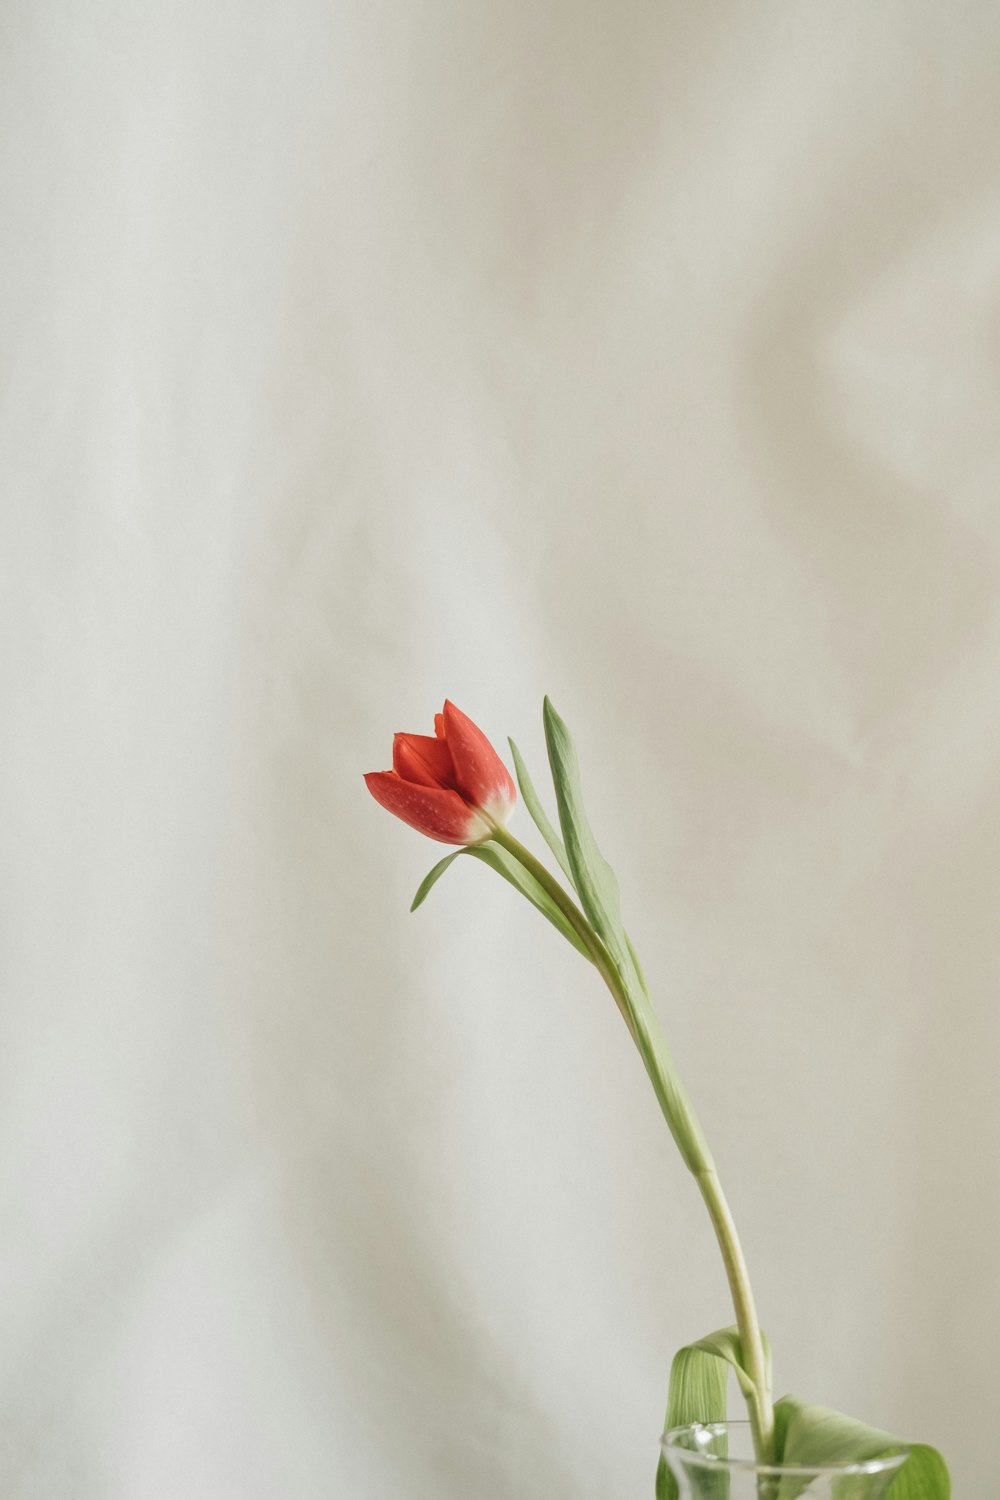 유리 꽃병에 담긴 하나의 붉은 꽃